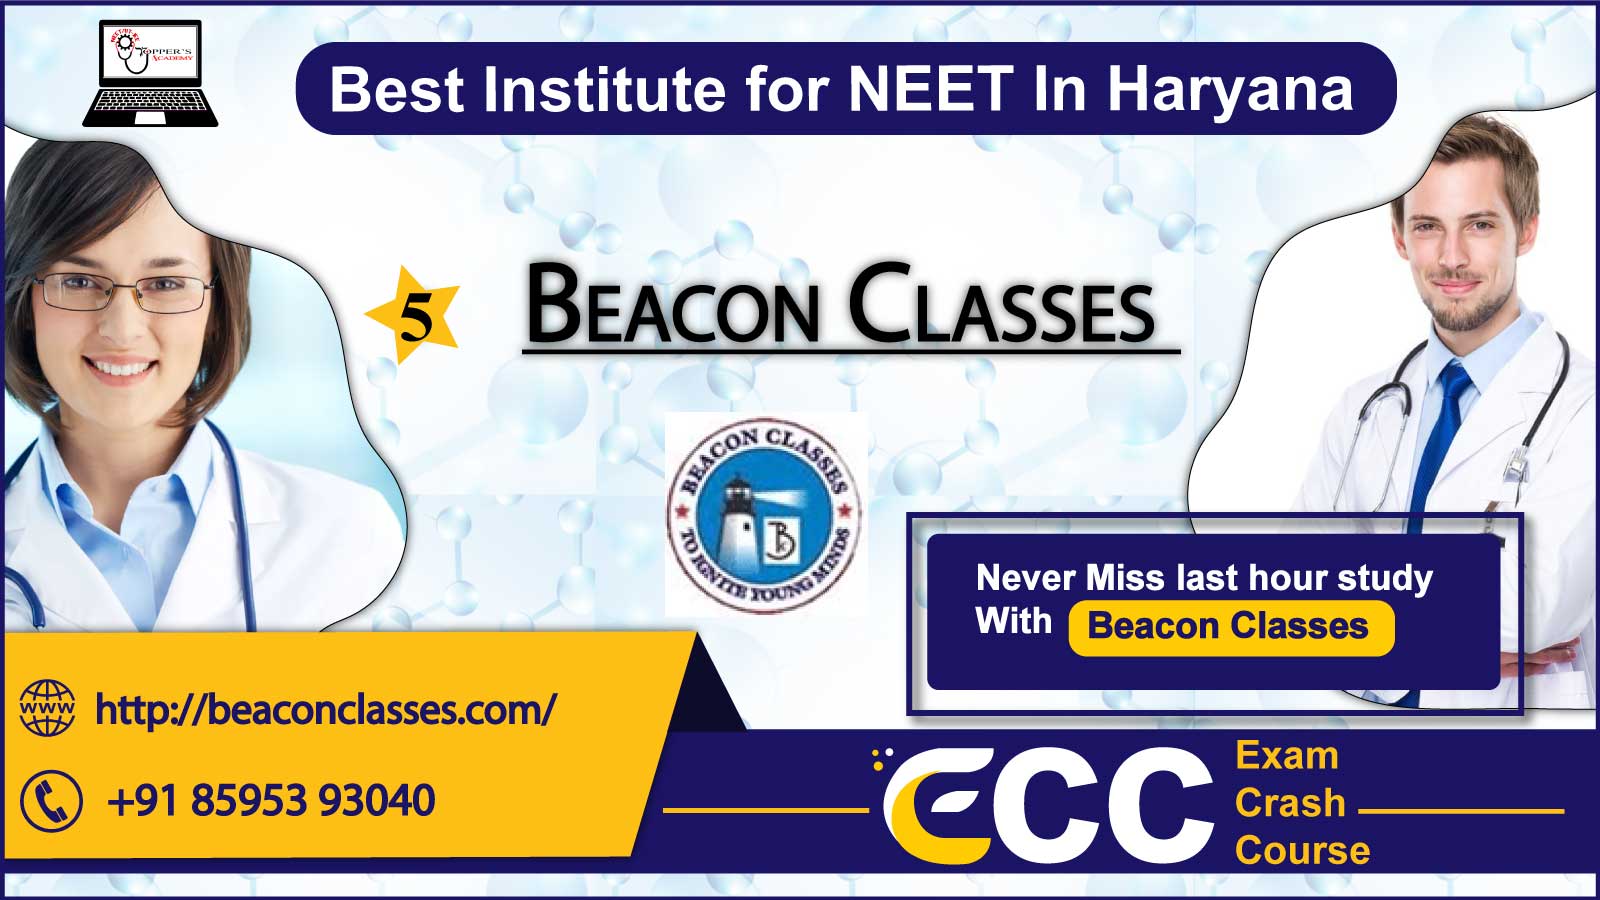 Beacon Clasees NEET coaching In Haryana